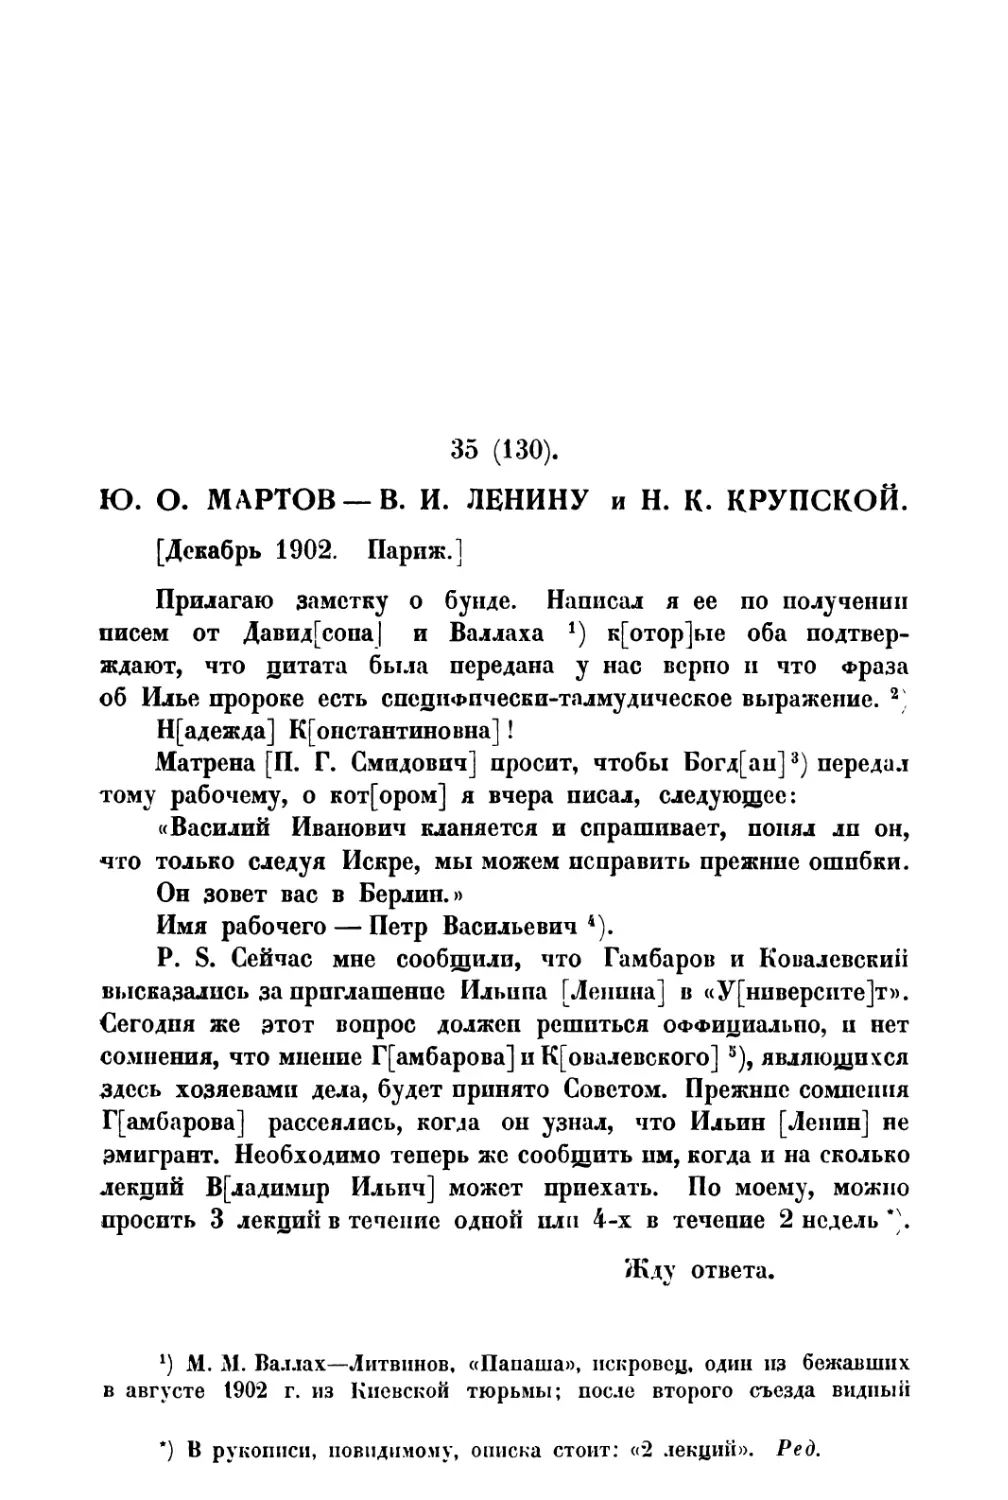 35. » В. И. Ленину и Н. К. Крупской — декабрь 1902 г